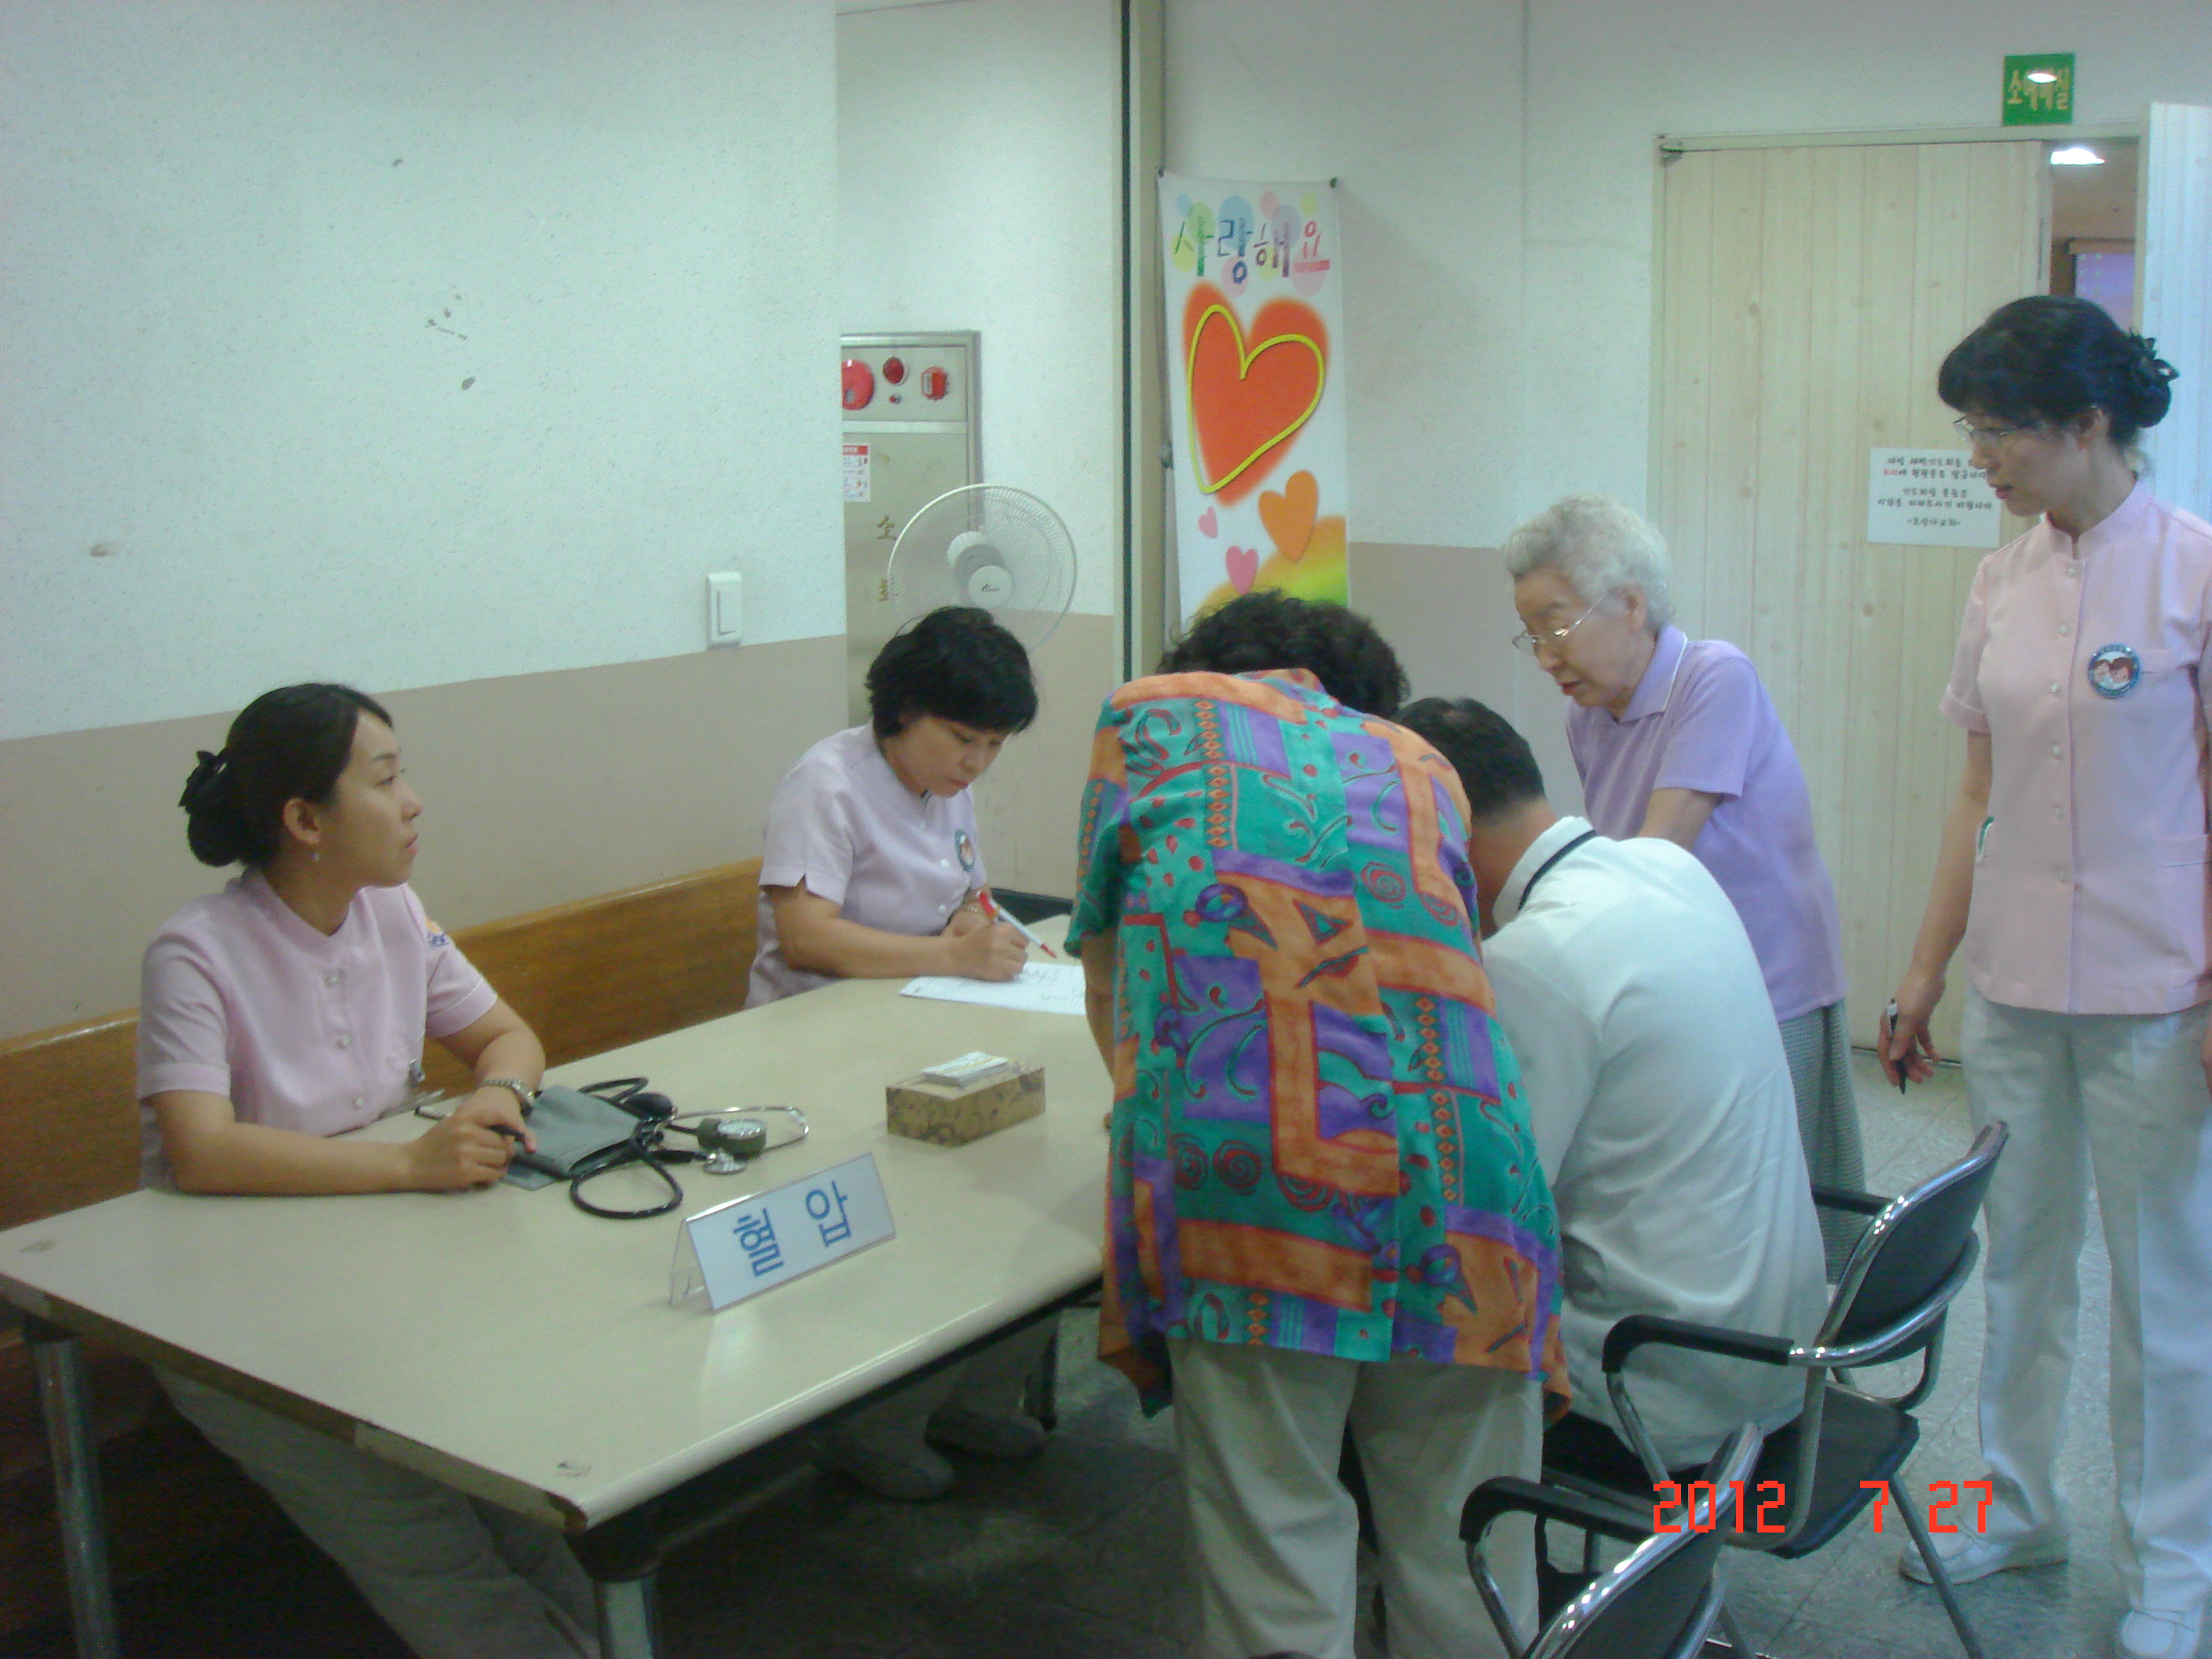 2012년 7월 27일 - 호산나교회 의료봉사 게시글의 10번째 첨부파일입니다.